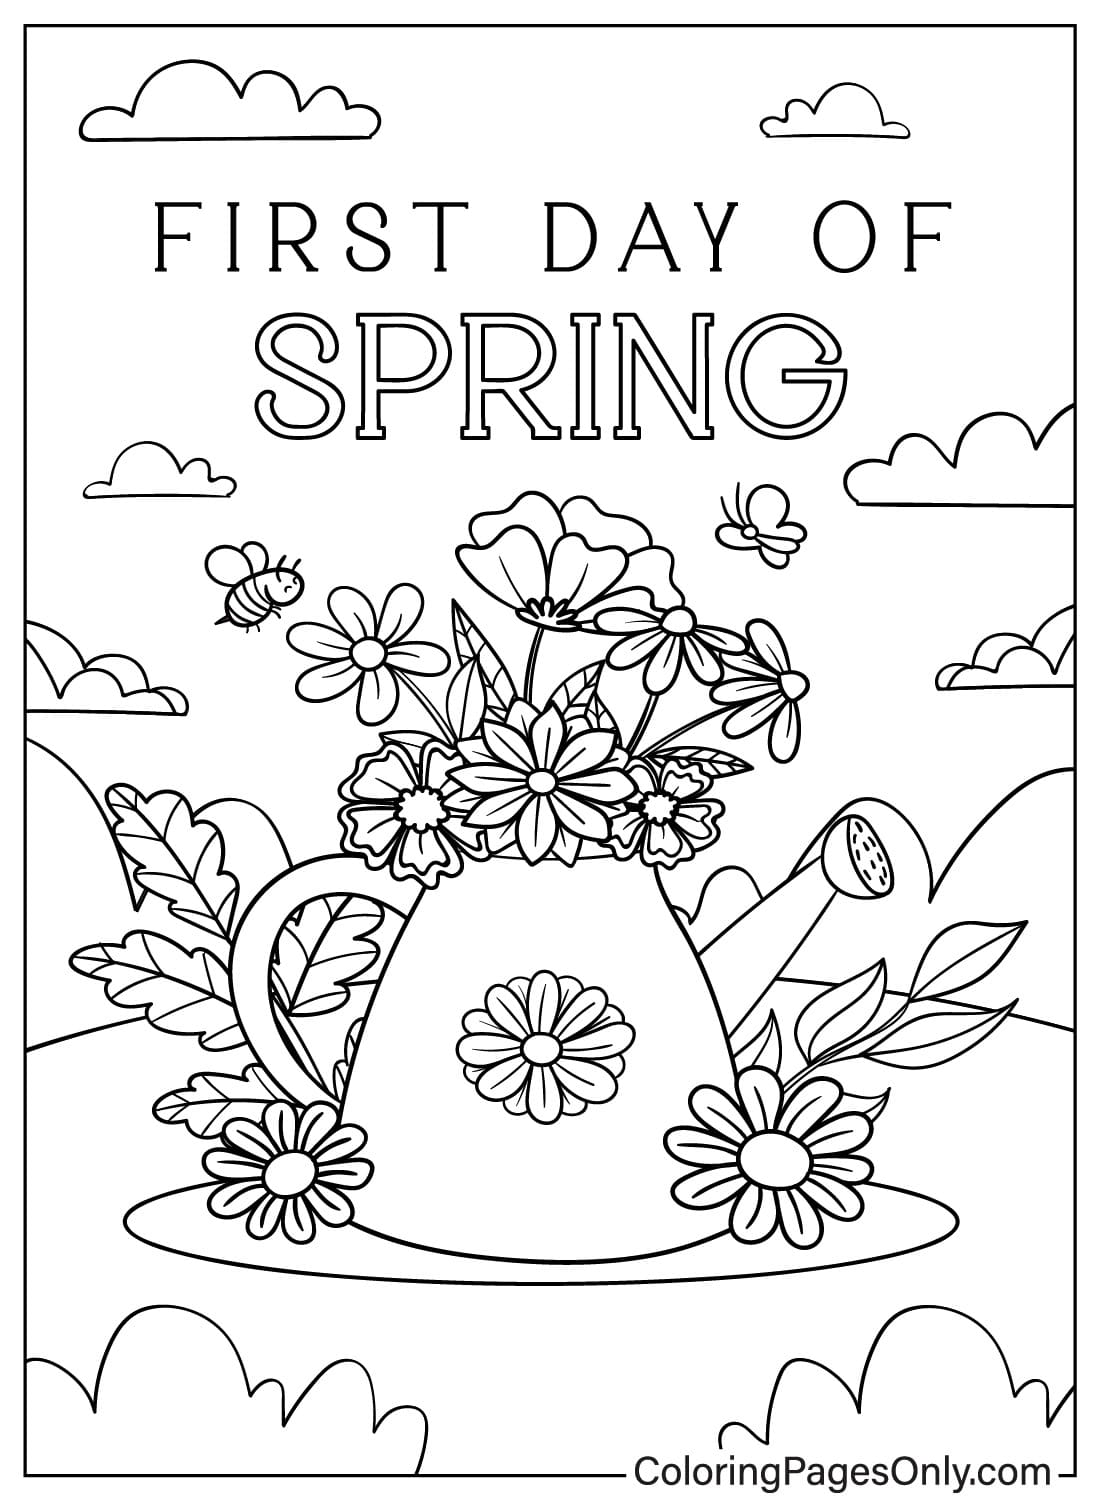 Primeiro dia de primavera para colorir desde o primeiro dia de primavera